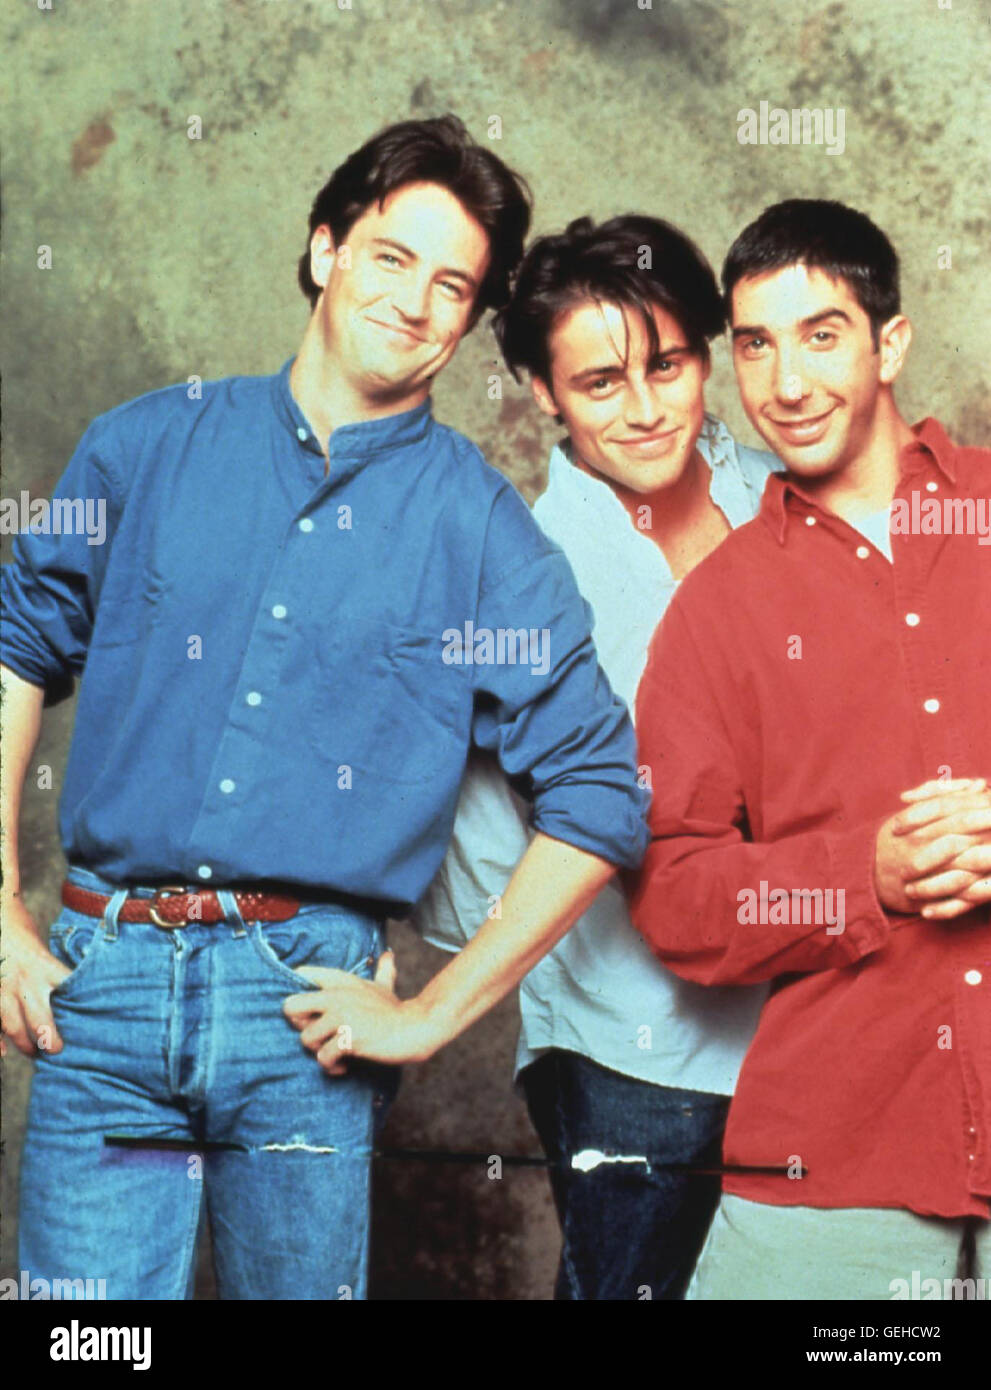 Chandler (Matthew Perry), Joey (Matt LeBlanc), Ross (David Schwimmer)   *** Local Caption *** 1995, Friends, Friends   -  Neutral Stock Photo